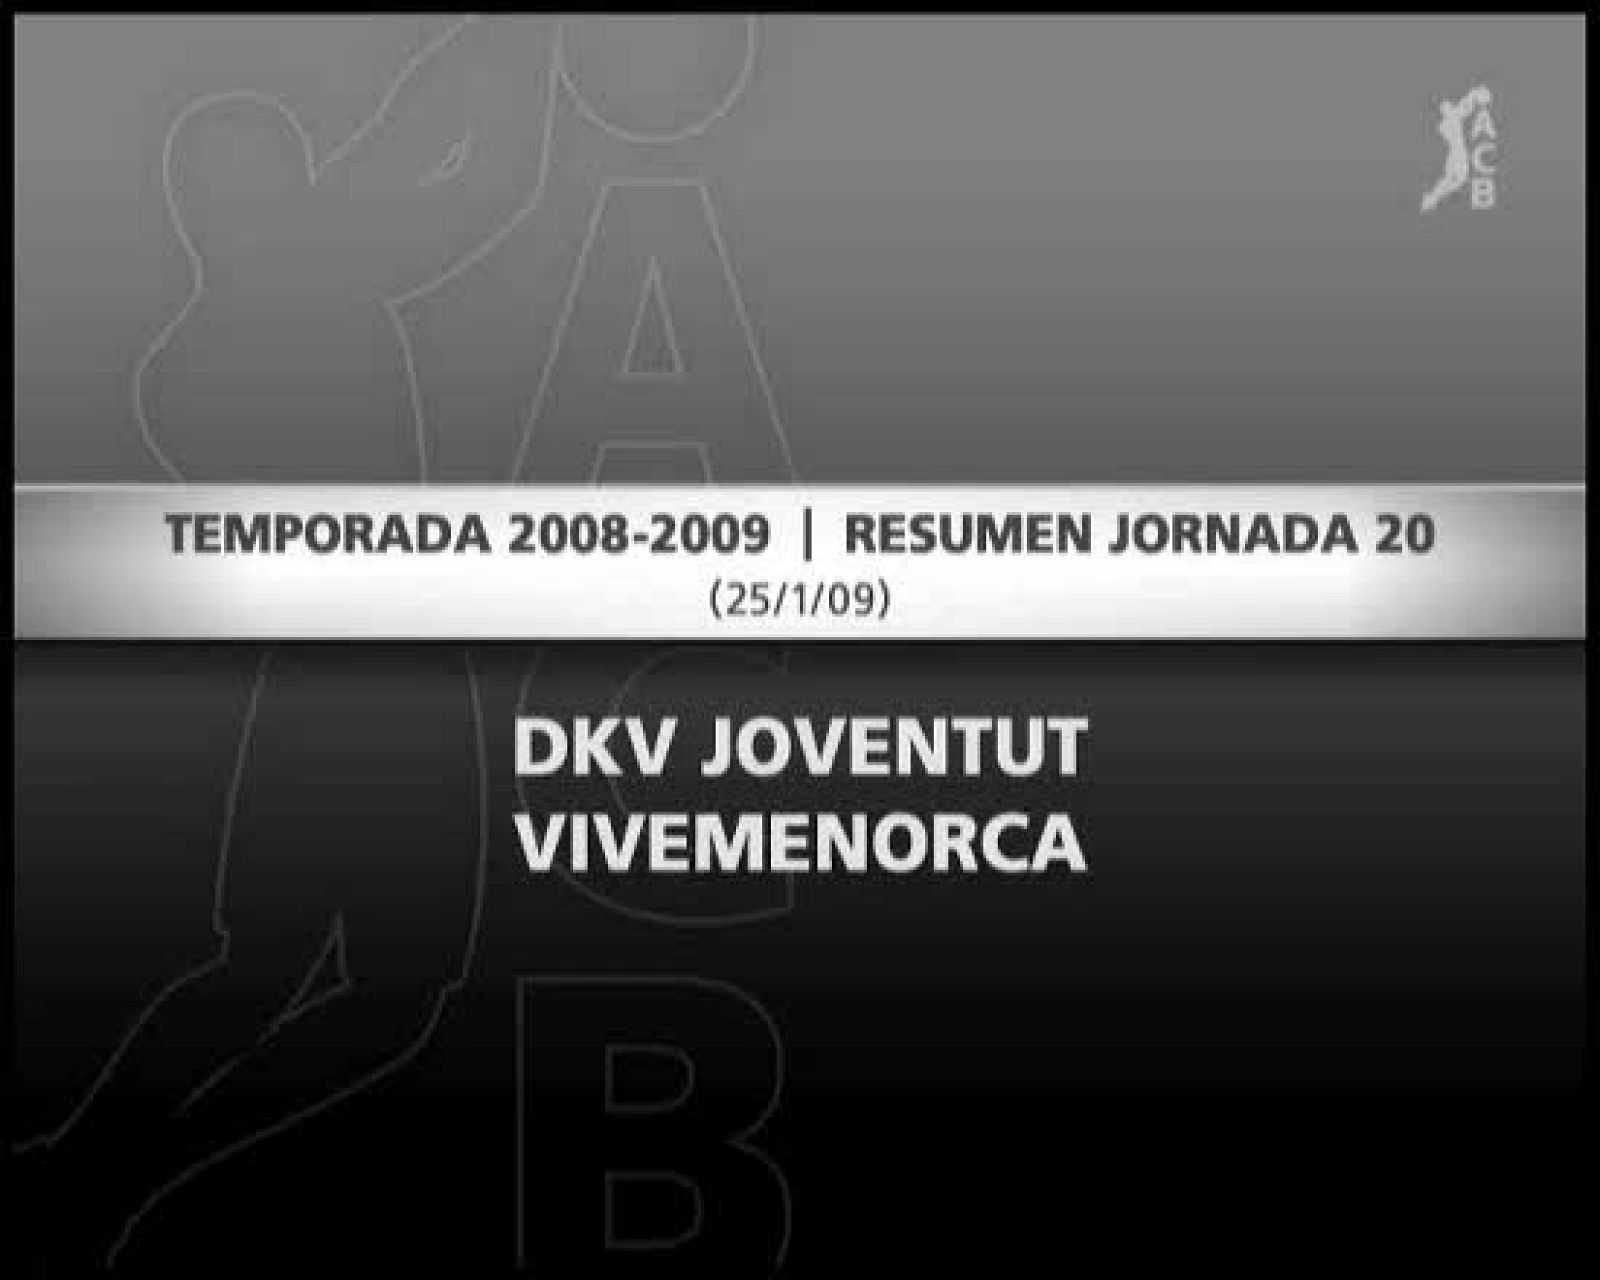 DKv Joventut 92-74 ViveMenorca